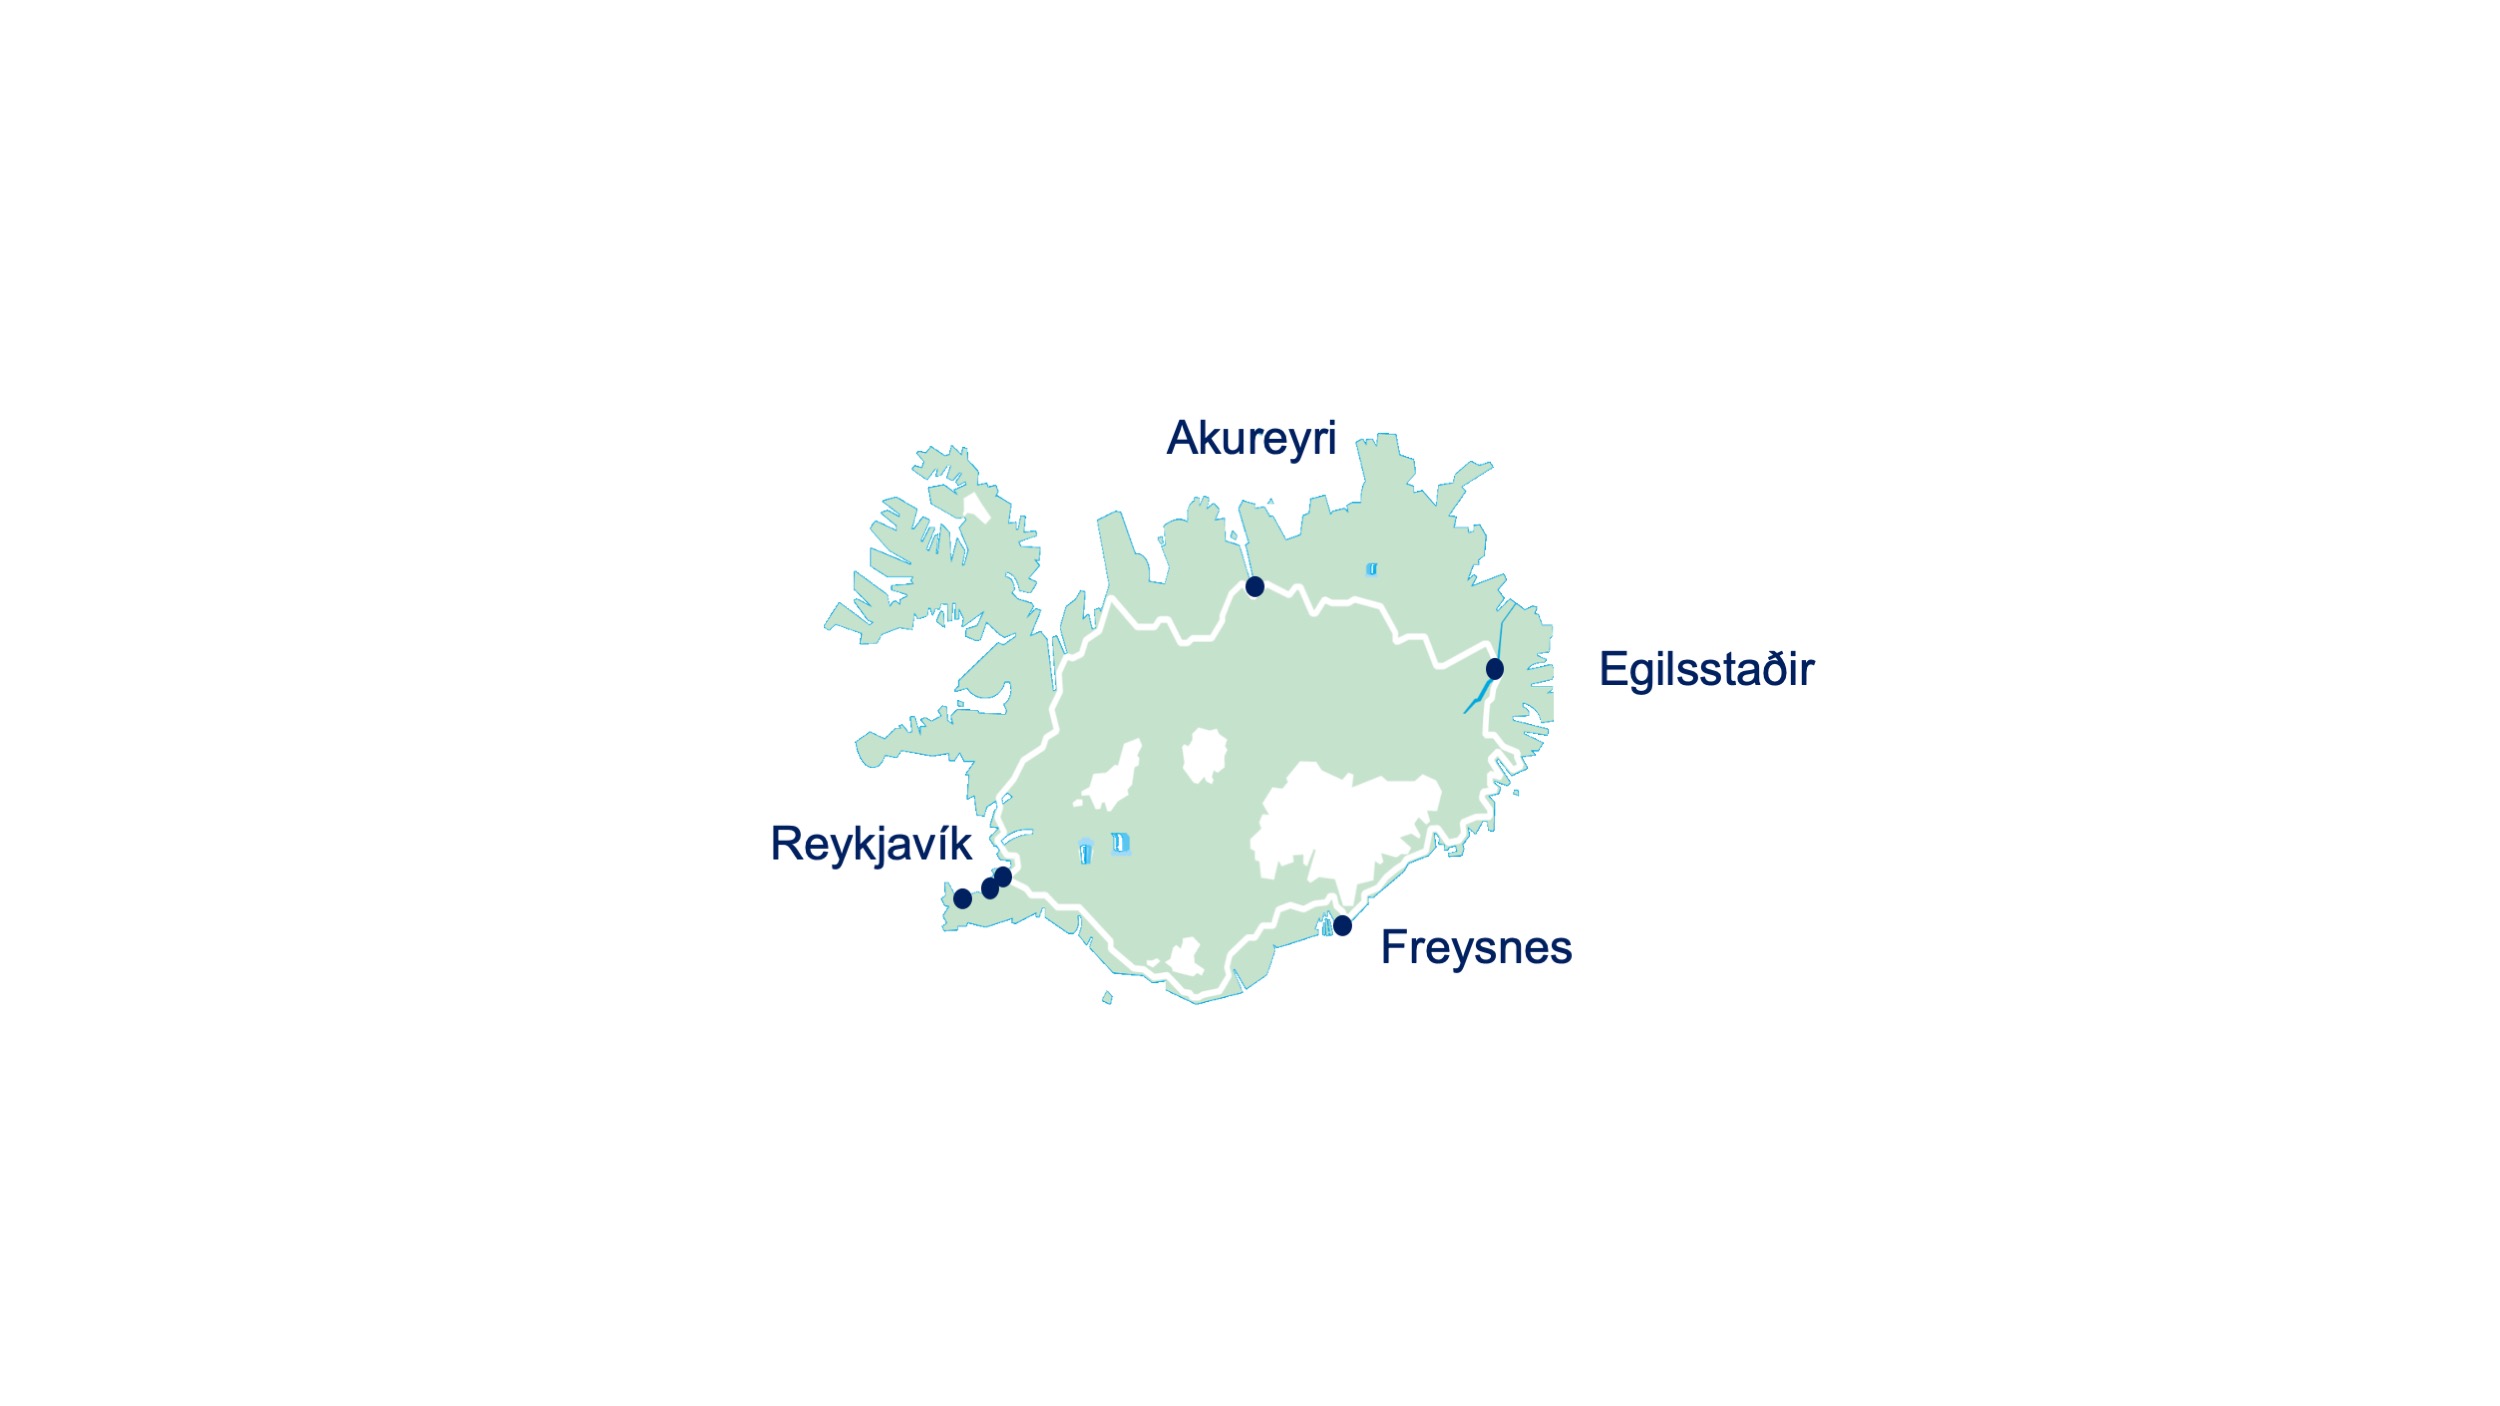 Qair's Baer and Íslenska vetnisfélagið renewable hydrogen stations in Iceland